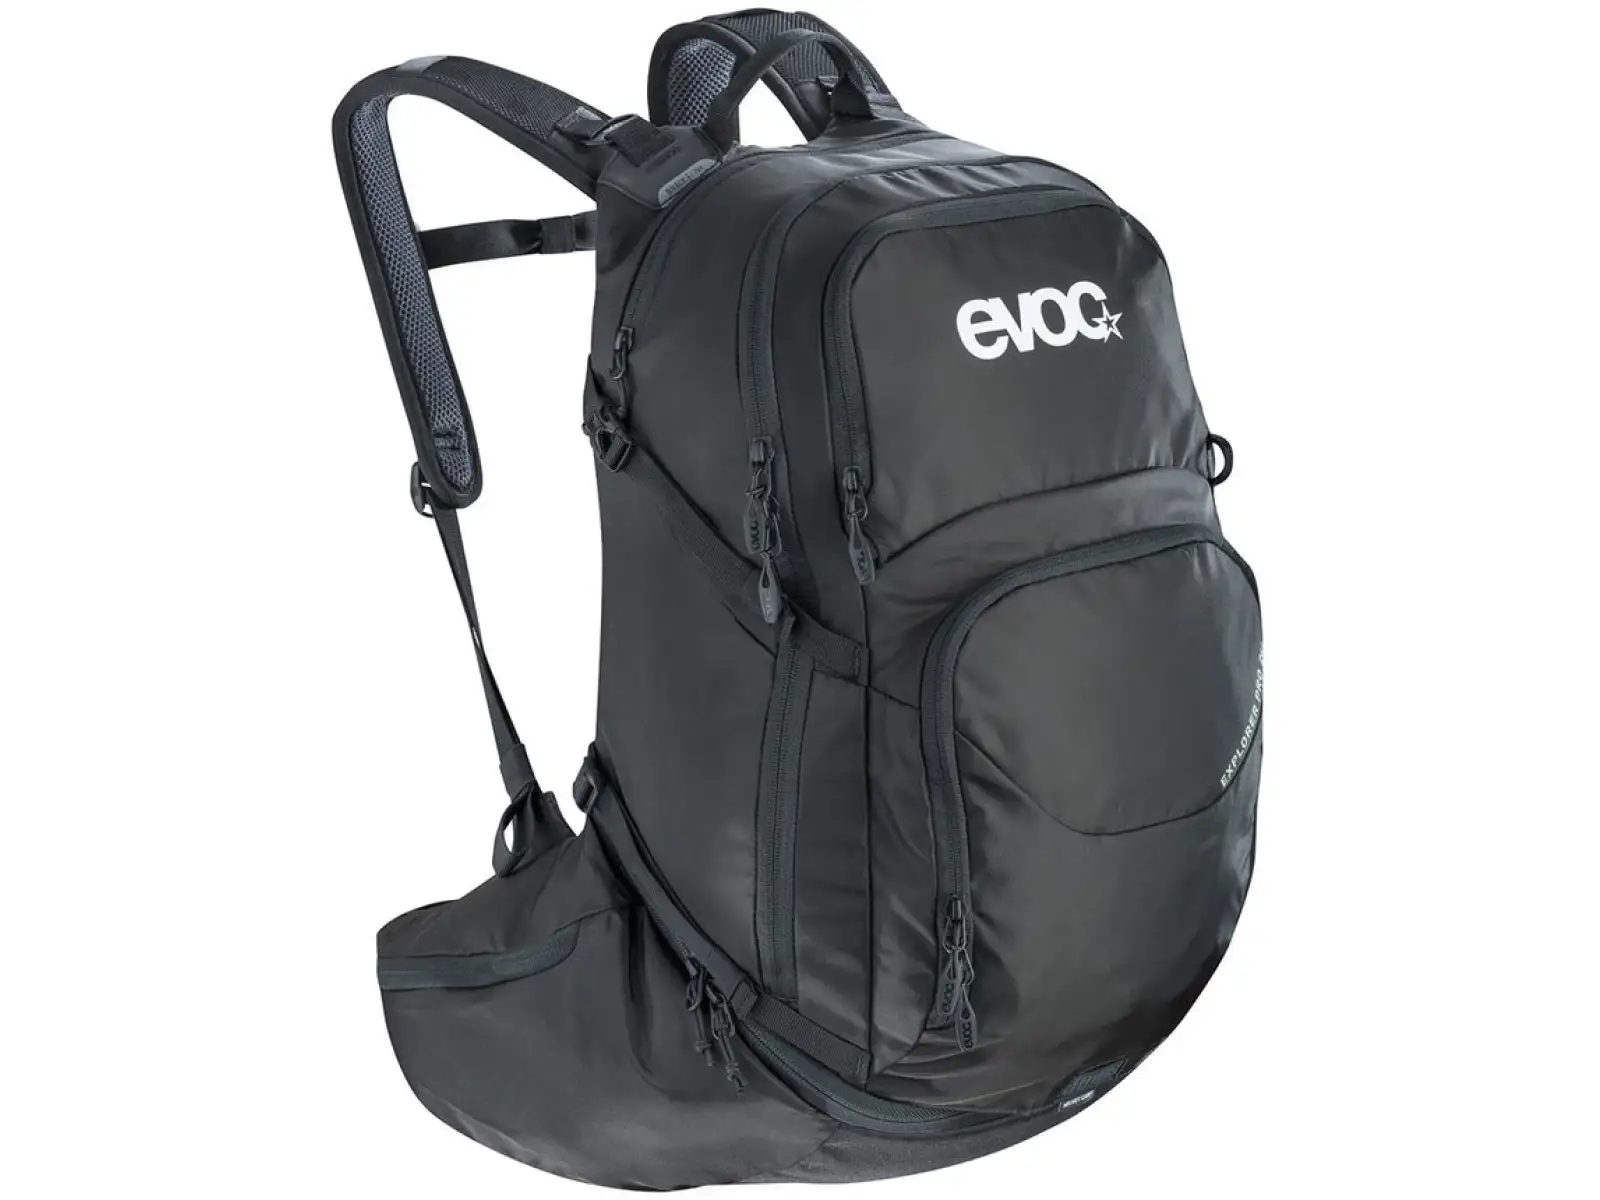 Evoc Explorer Pro (30L) batoh black